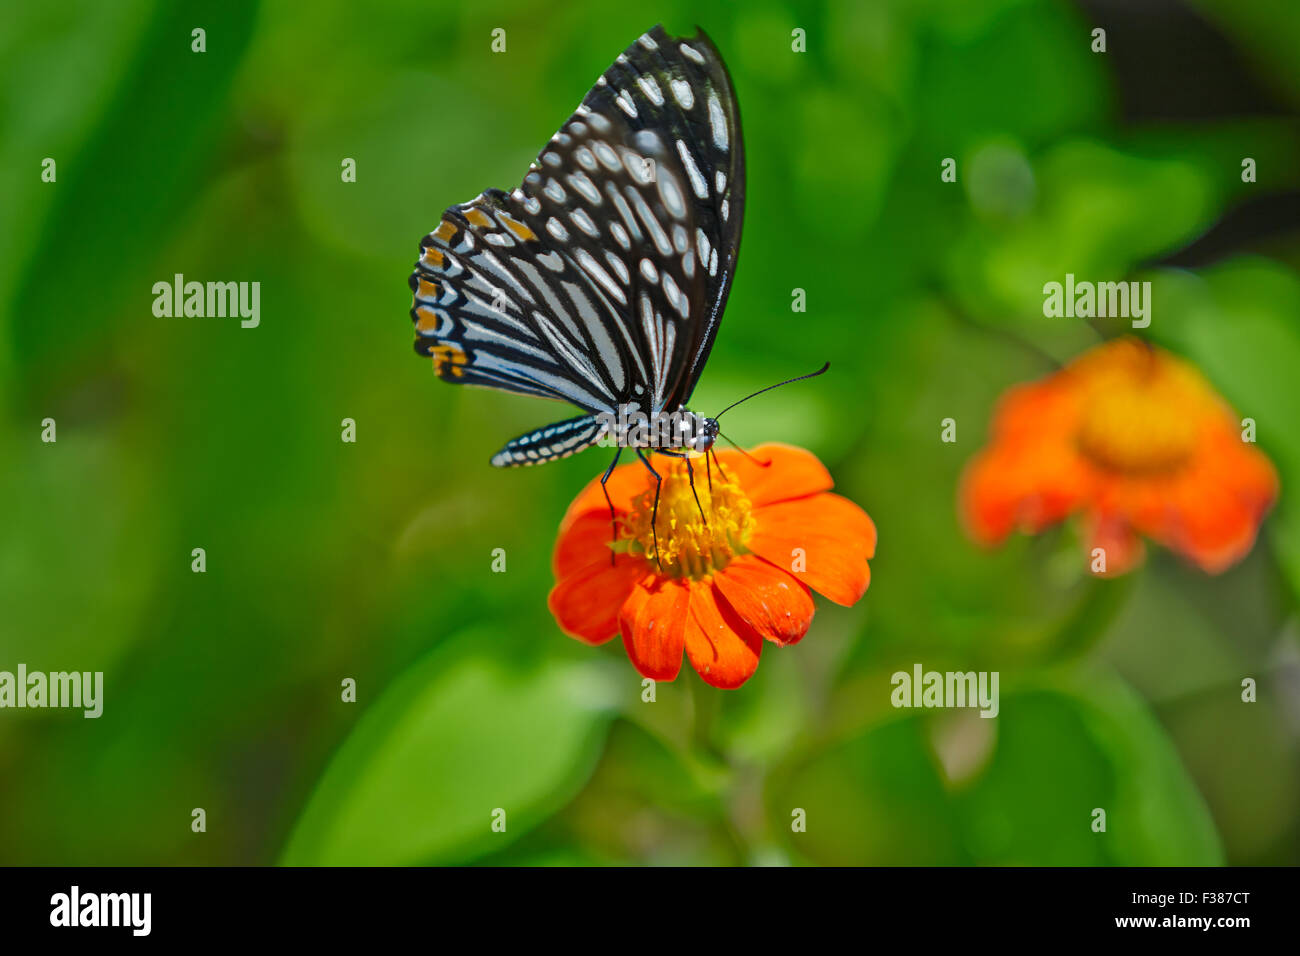 Le papillon MIME commun (Papilio clytia), forme dissimilis, repose sur une fleur. Banteay Srei Butterfly Centre, province de Siem Reap, Cambodge. Banque D'Images